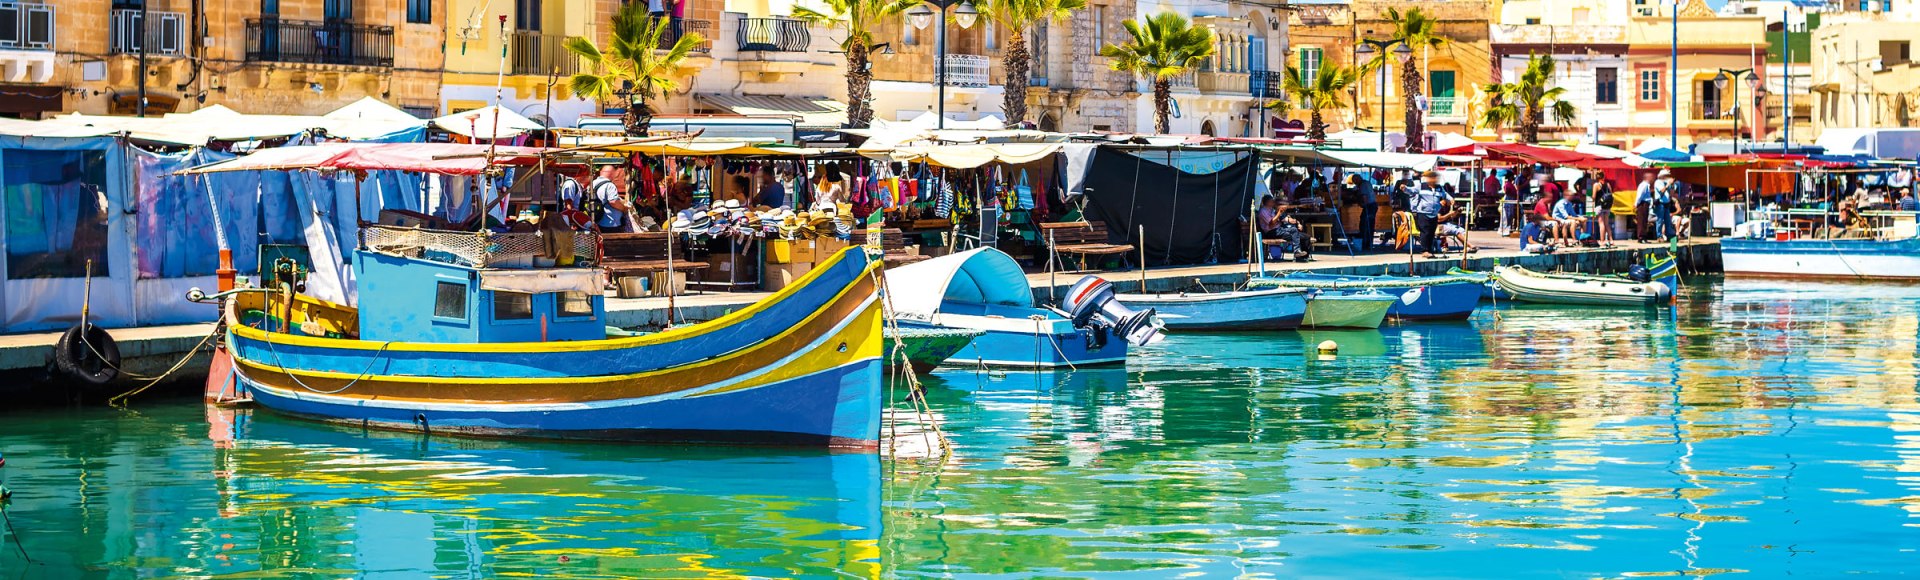 Hafen von Marsaxlokk auf Malta, © iStockphoto.com©ZoltanGabor